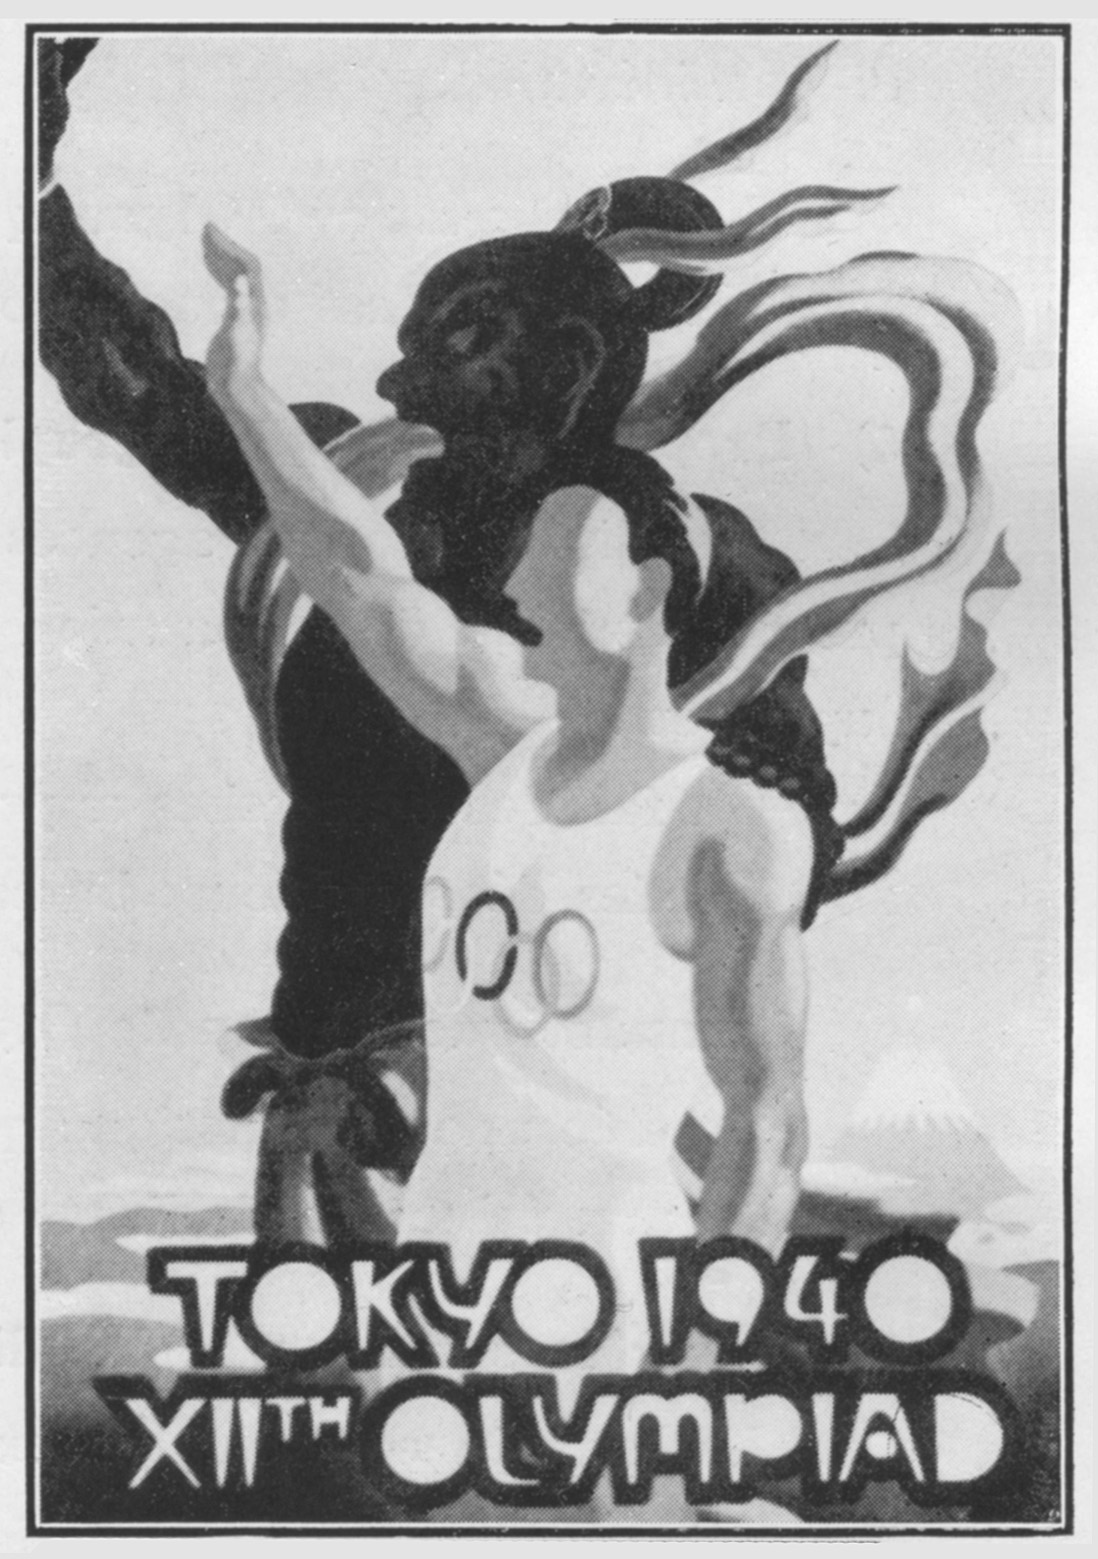 4. Tokyo 1940 Manifesto